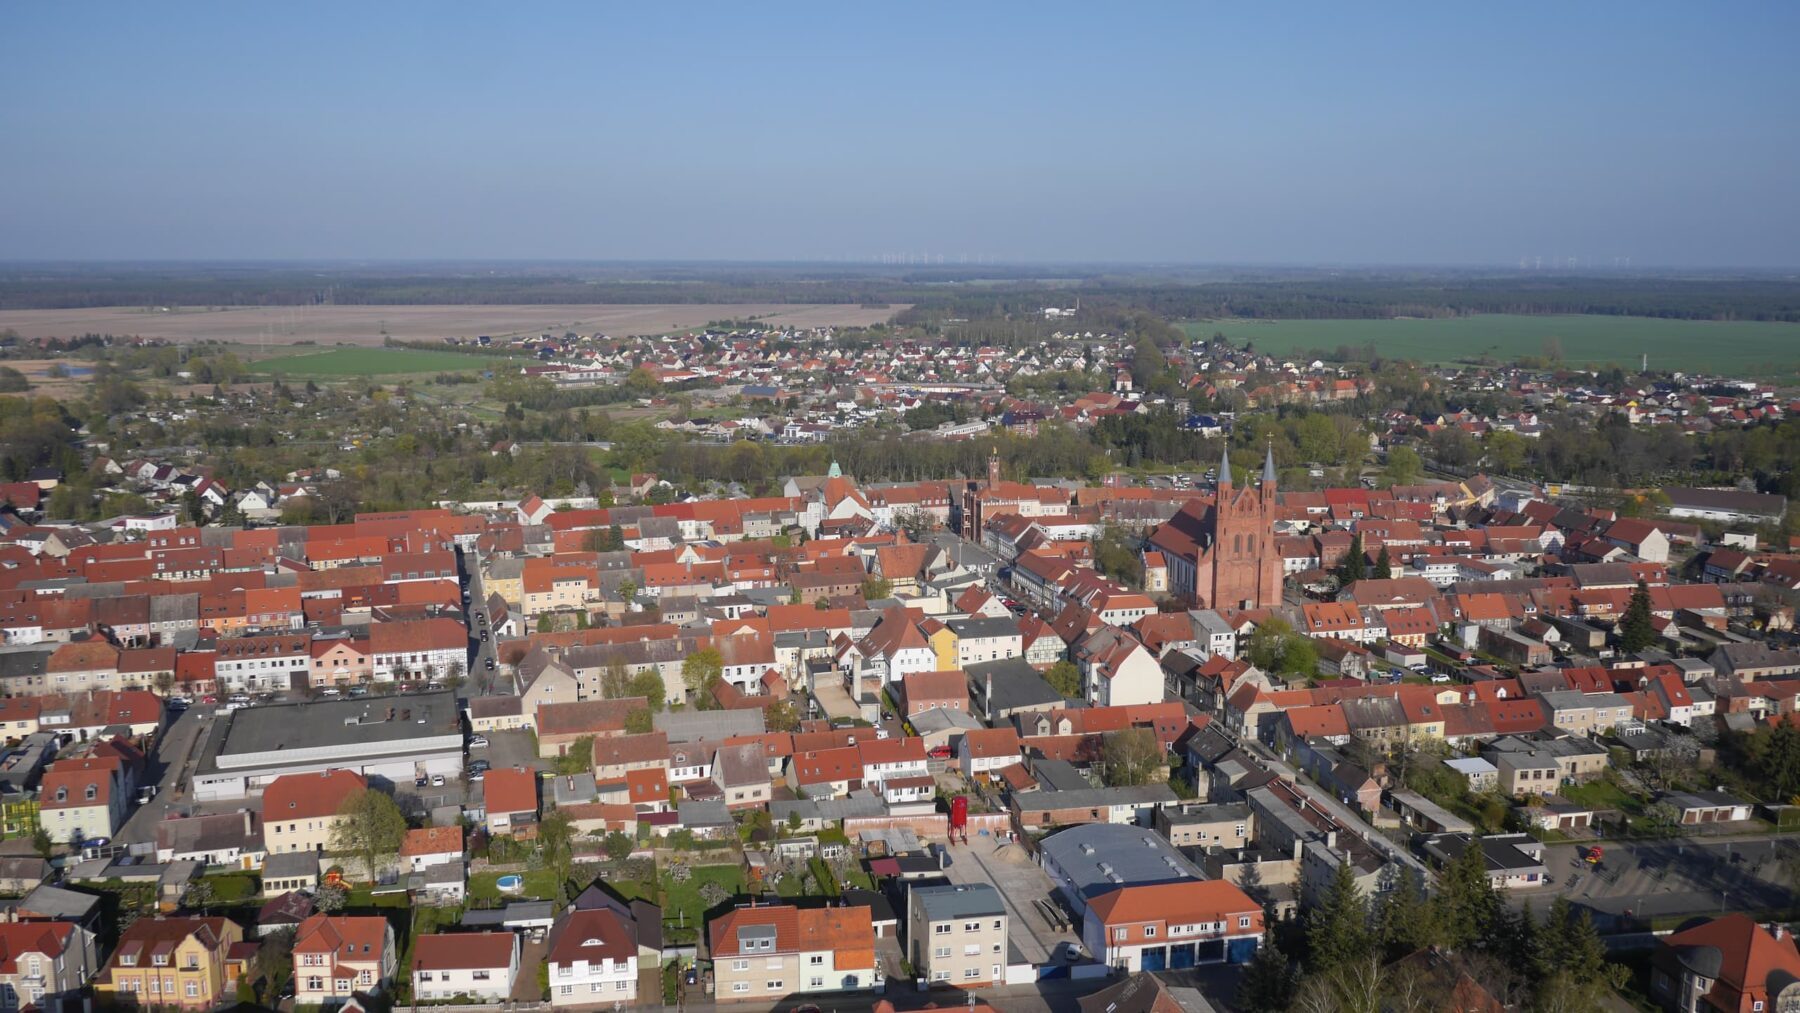 Blick auf die Stadt Kyritz und die St. Marien-Kirche.